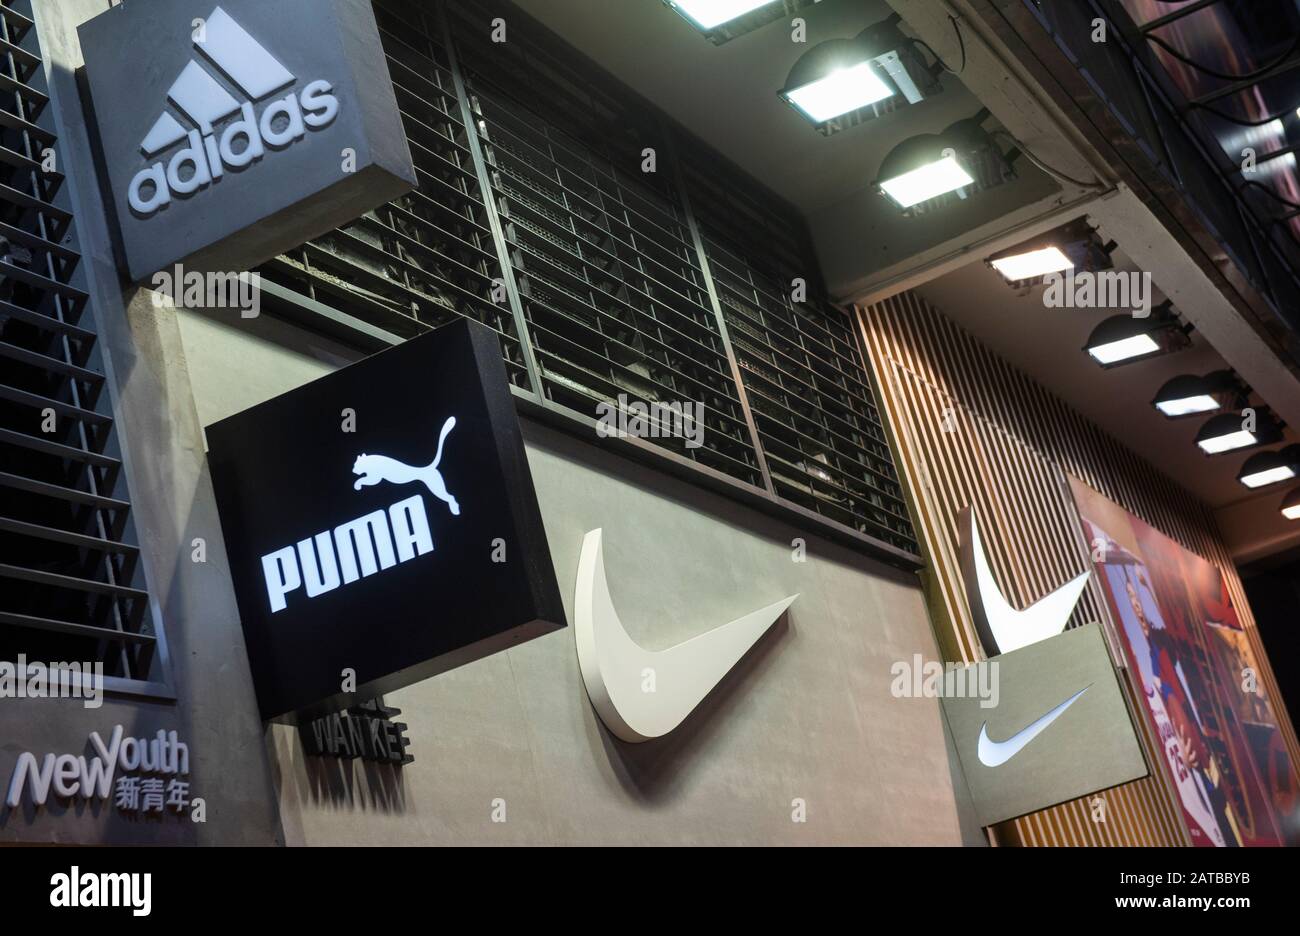 Marcas multinacionales de ropa deportiva Adidas, Puma y los logotipos de Nike en una tienda de Hong Kong Fotografía de stock -